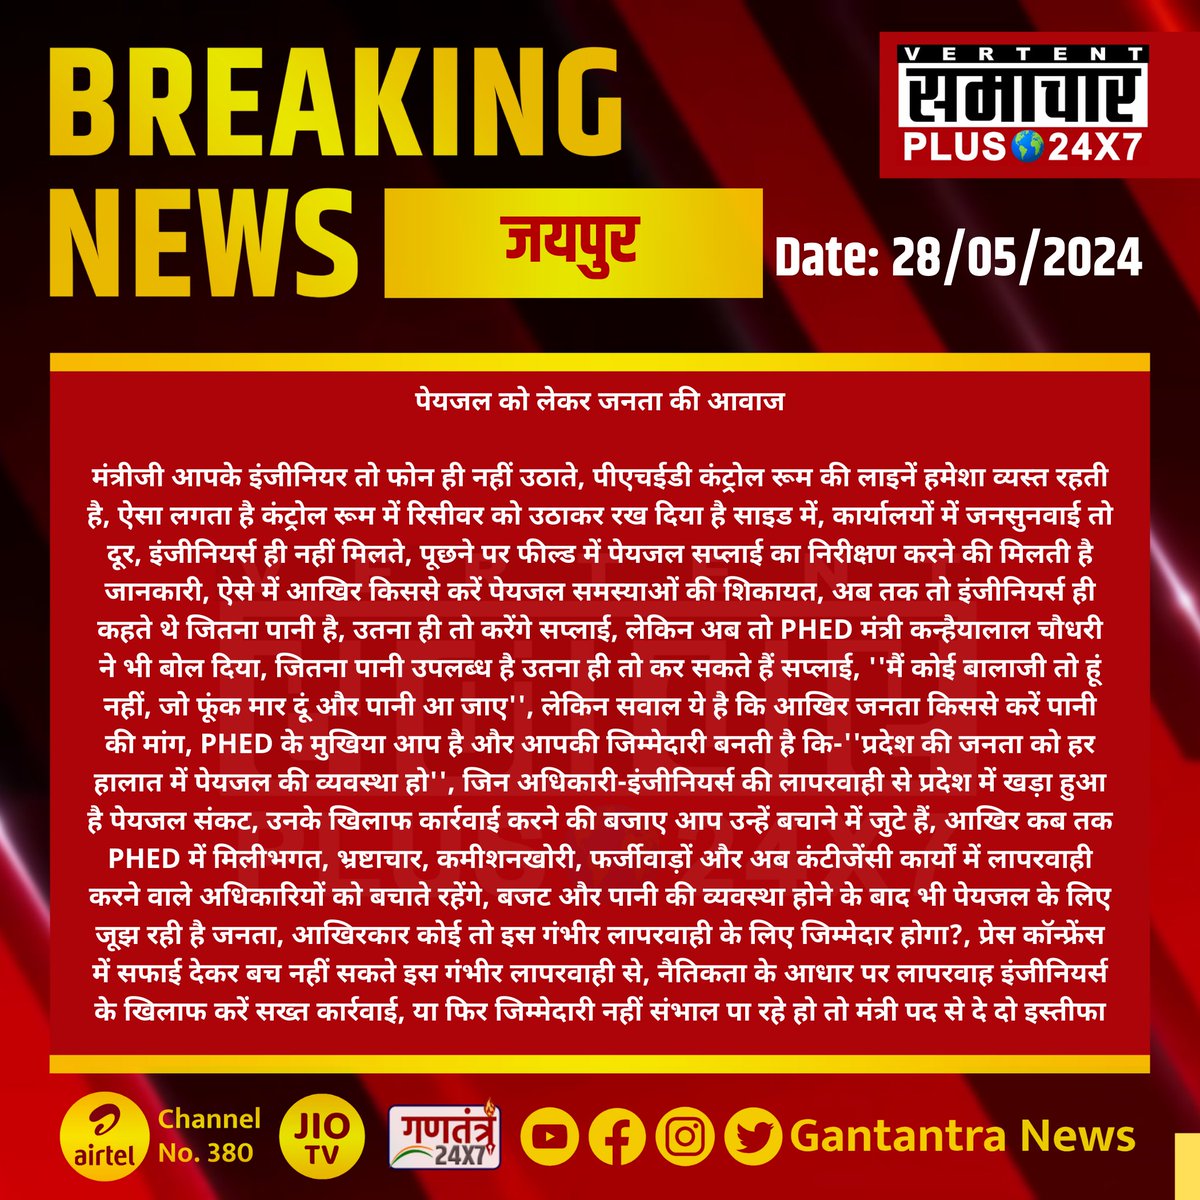 #जयपुर : पेयजल को लेकर जनता की आवाज

मंत्रीजी आपके इंजीनियर तो फोन ही नहीं उठाते...
#Jaipur #RajasthanNews #SamacharPlus @OnlineKanhaiya @RajCMO @RajasthanPhed @jitupancholi26